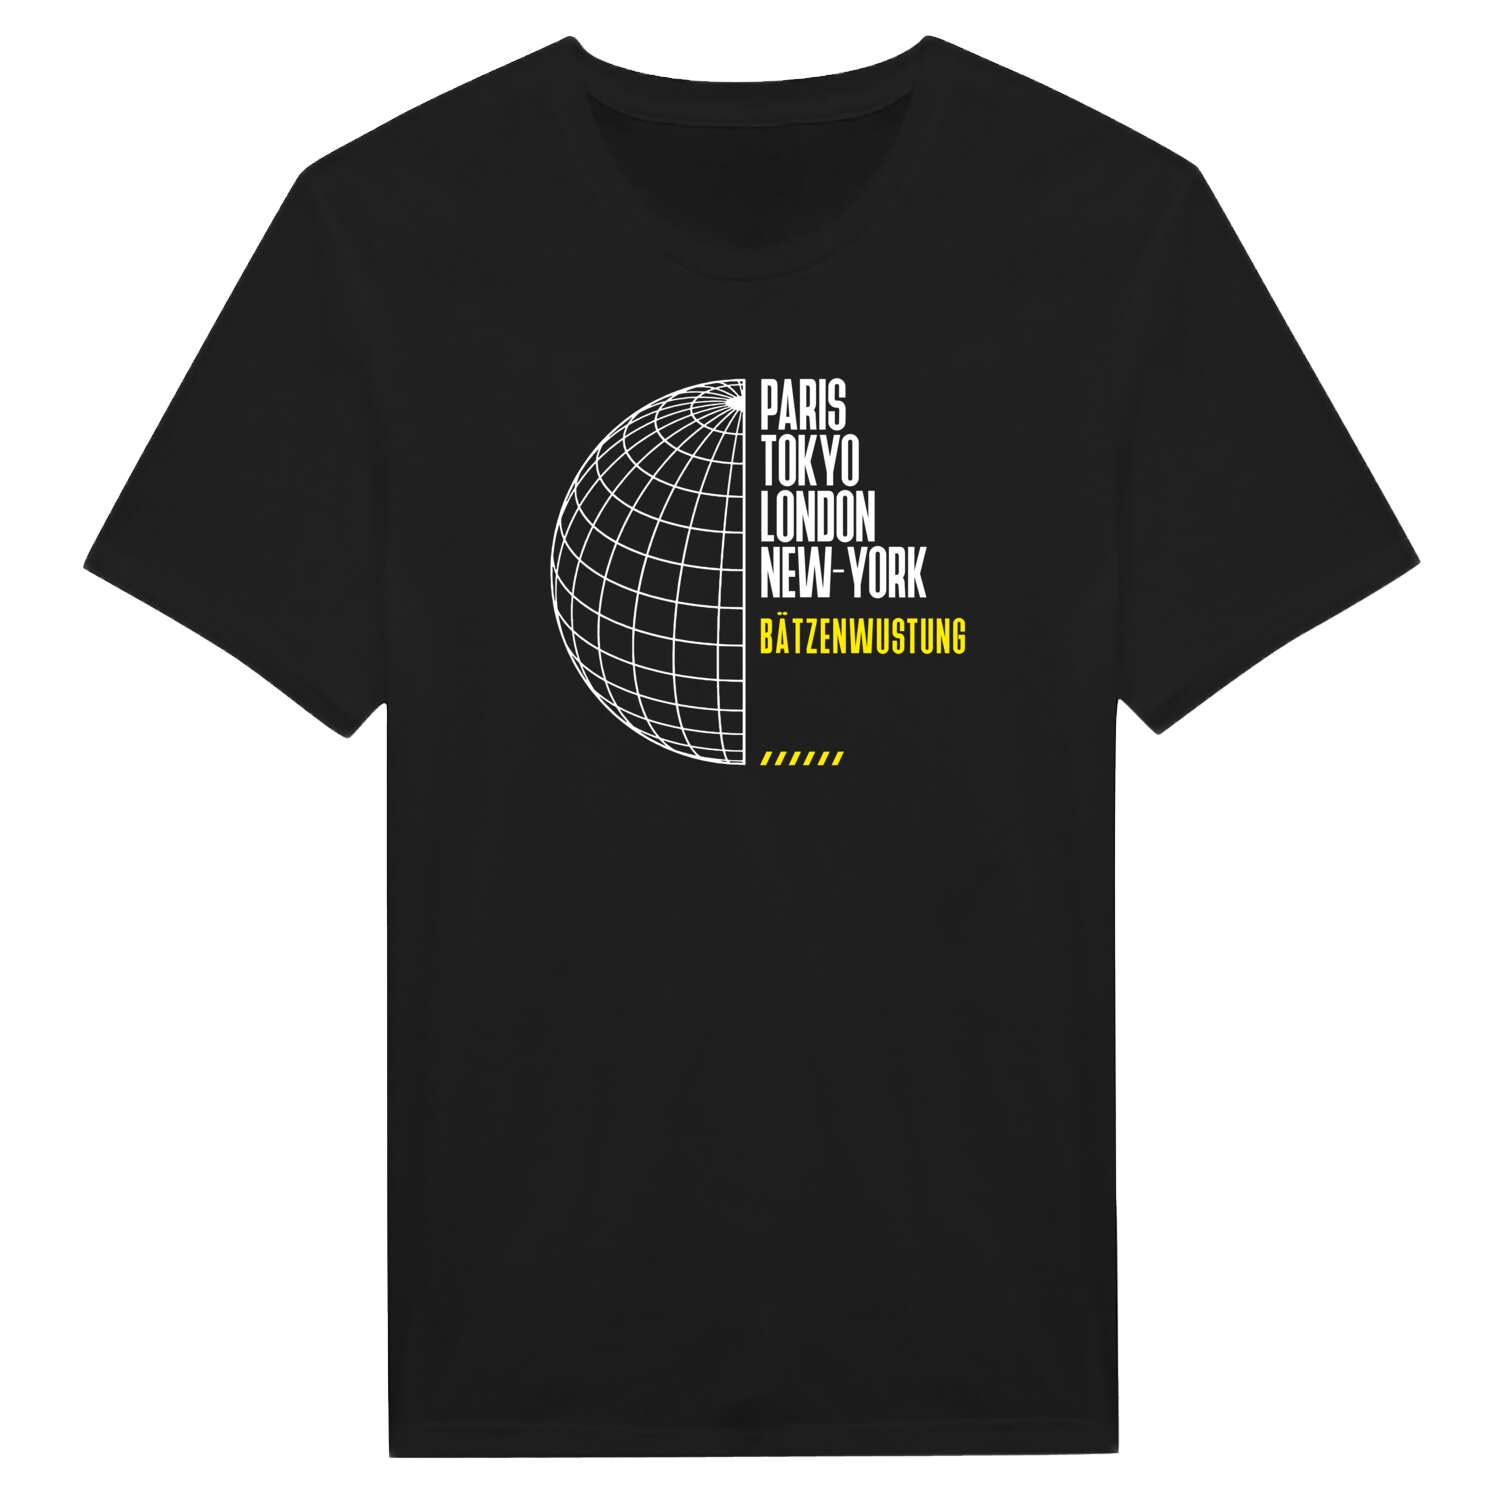 Bätzenwustung T-Shirt »Paris Tokyo London«